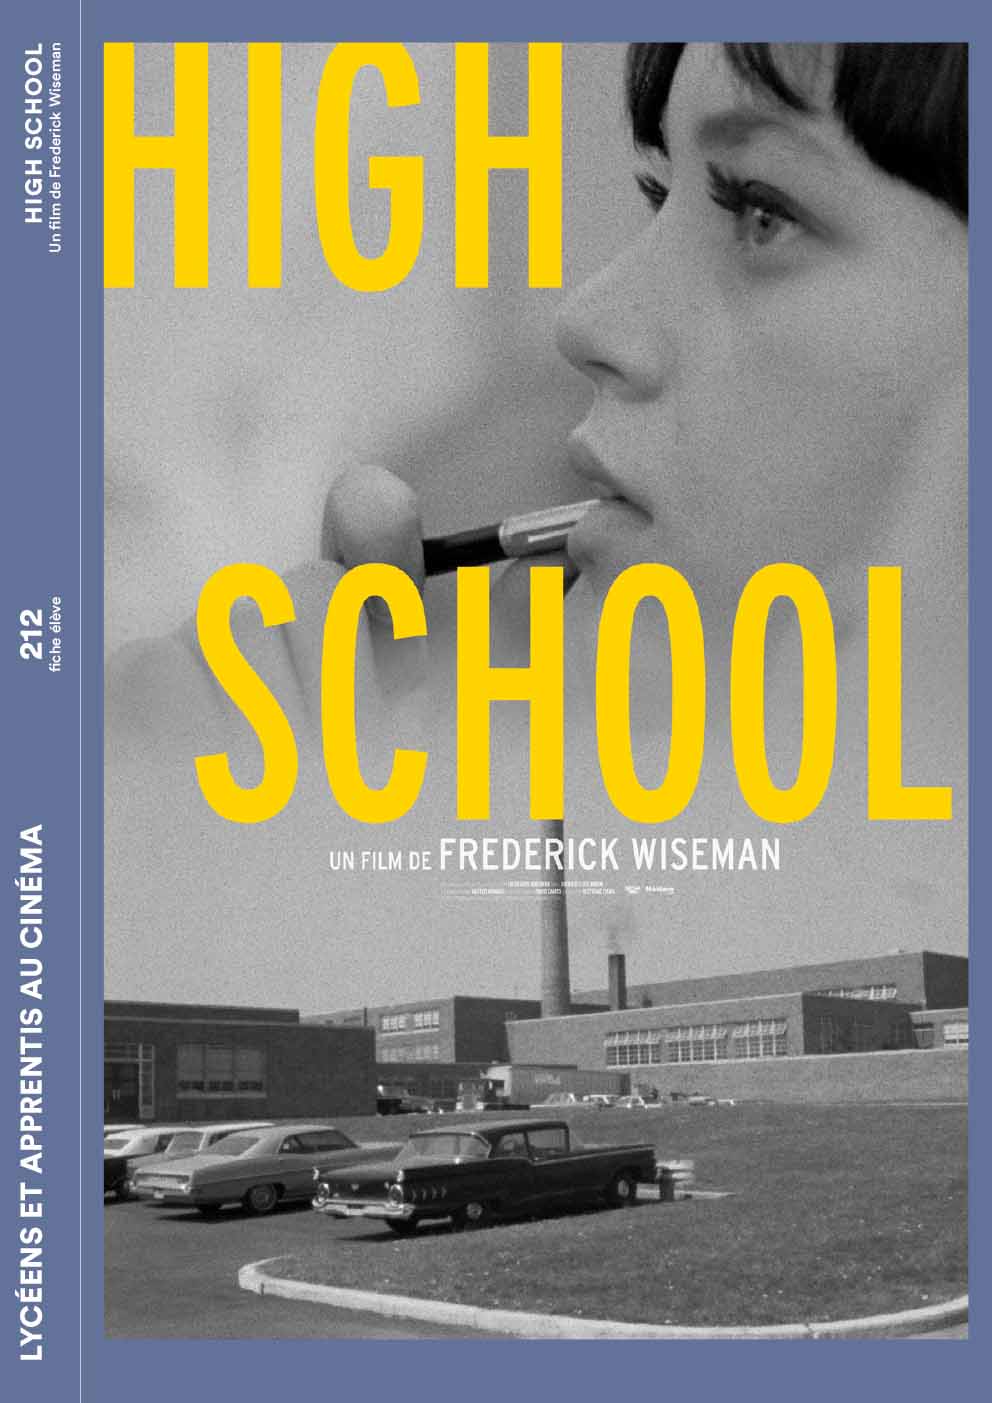  Couverture de la fiche élève du film High School de Frederik Wiseman